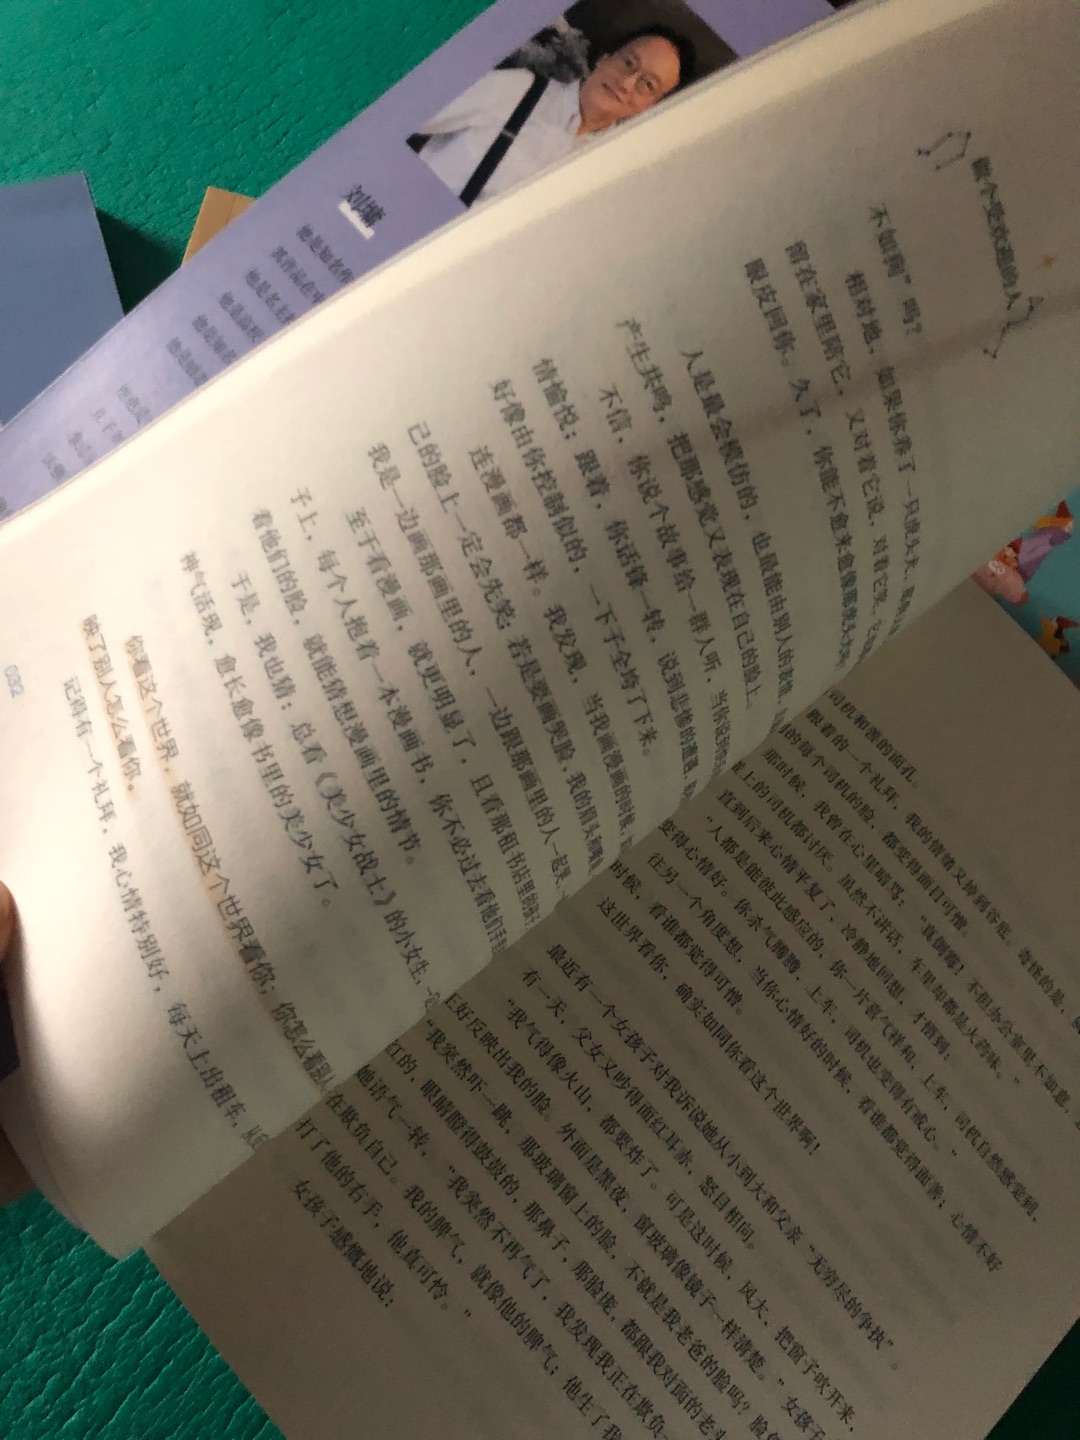 一直喜欢刘墉，文章短小通俗，值得反复读，给孩子看看，很有益！孩子11岁，正好看。